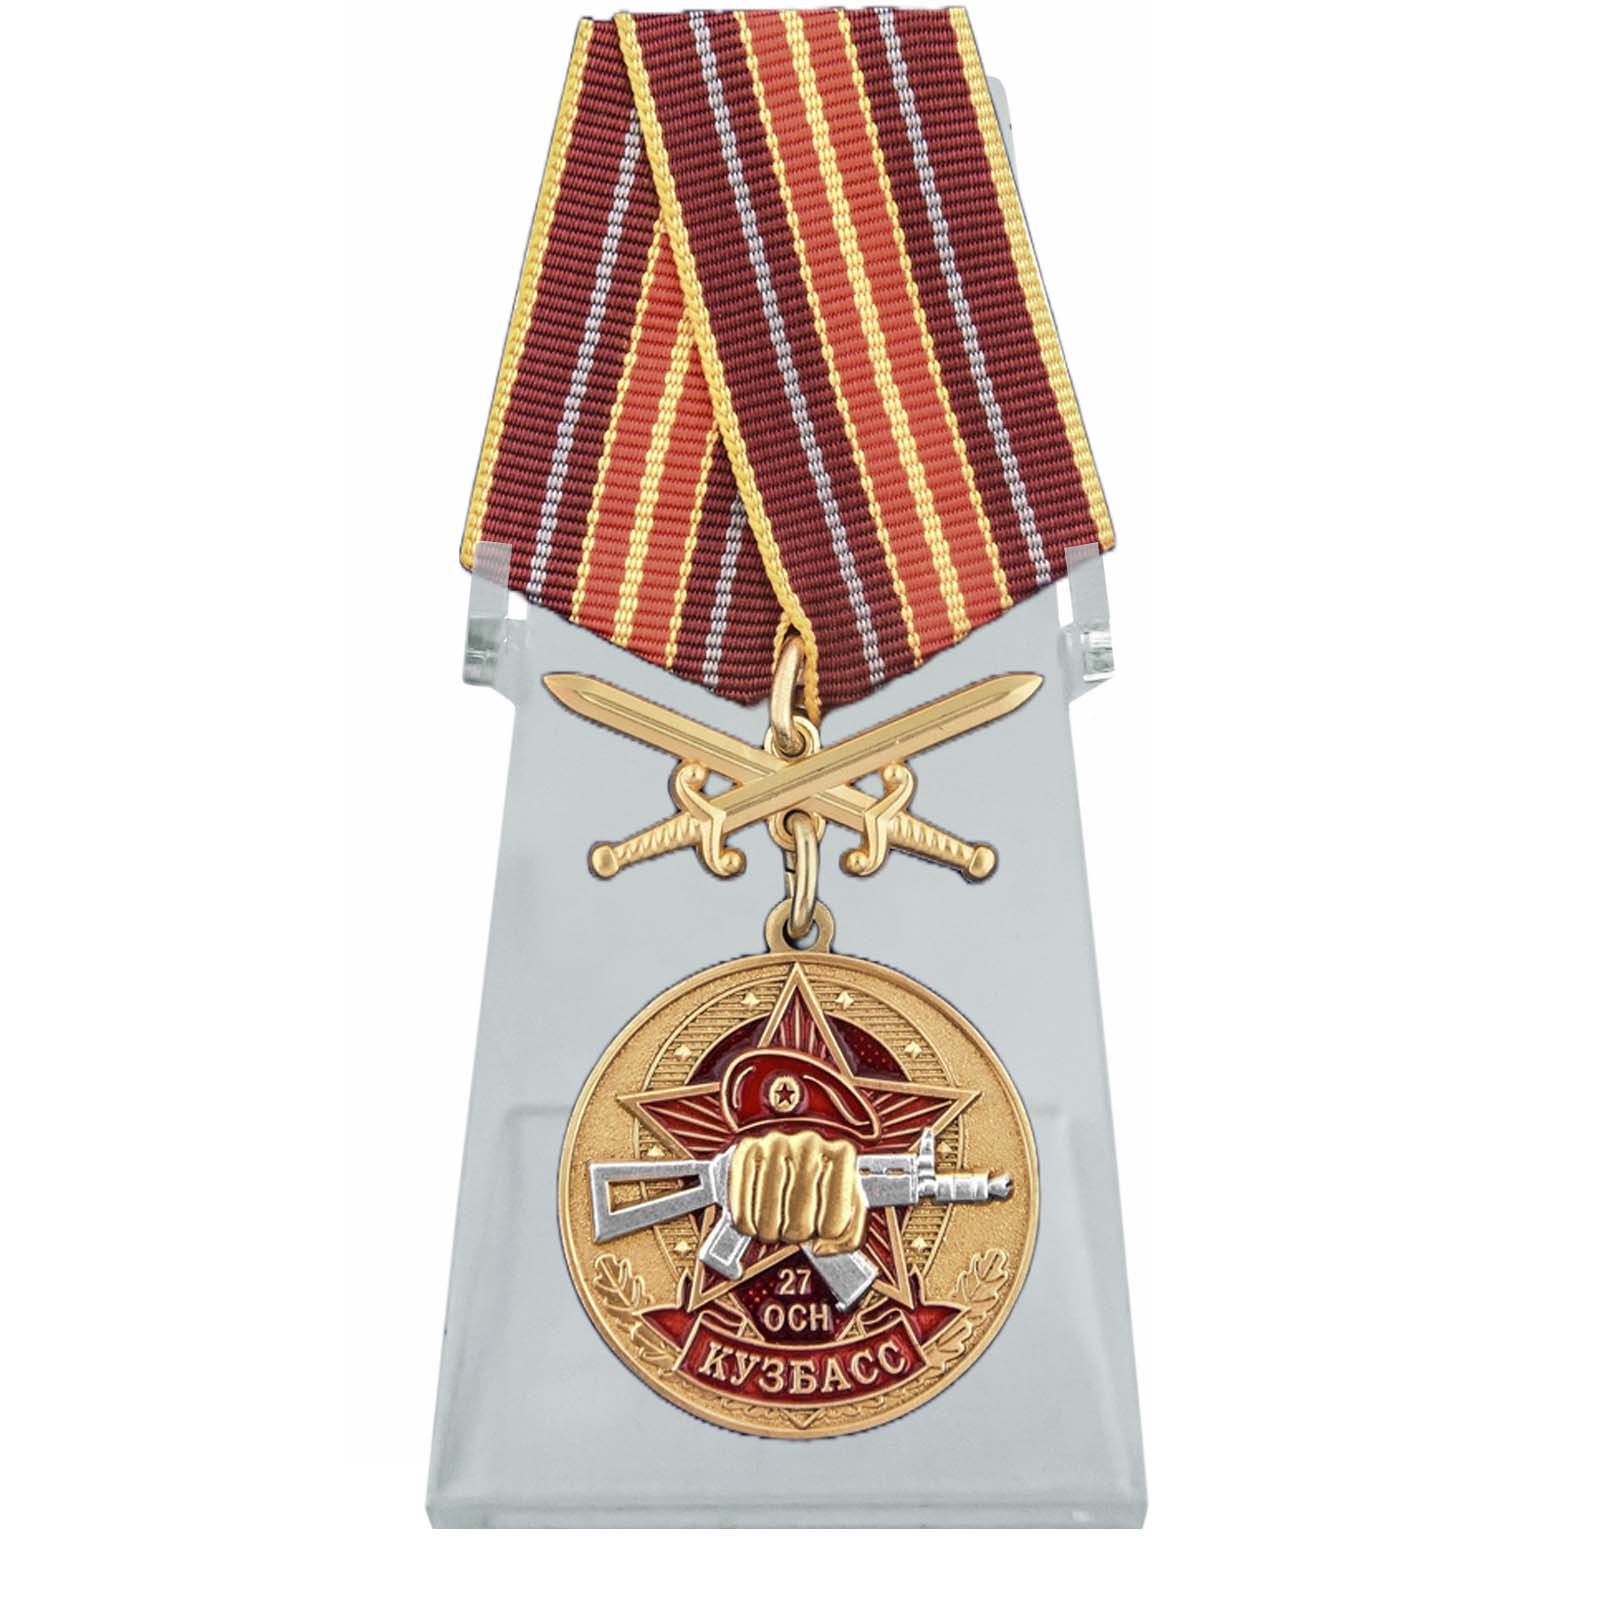 Медаль За службу в 27 ОСН "Кузбасс" на подставке